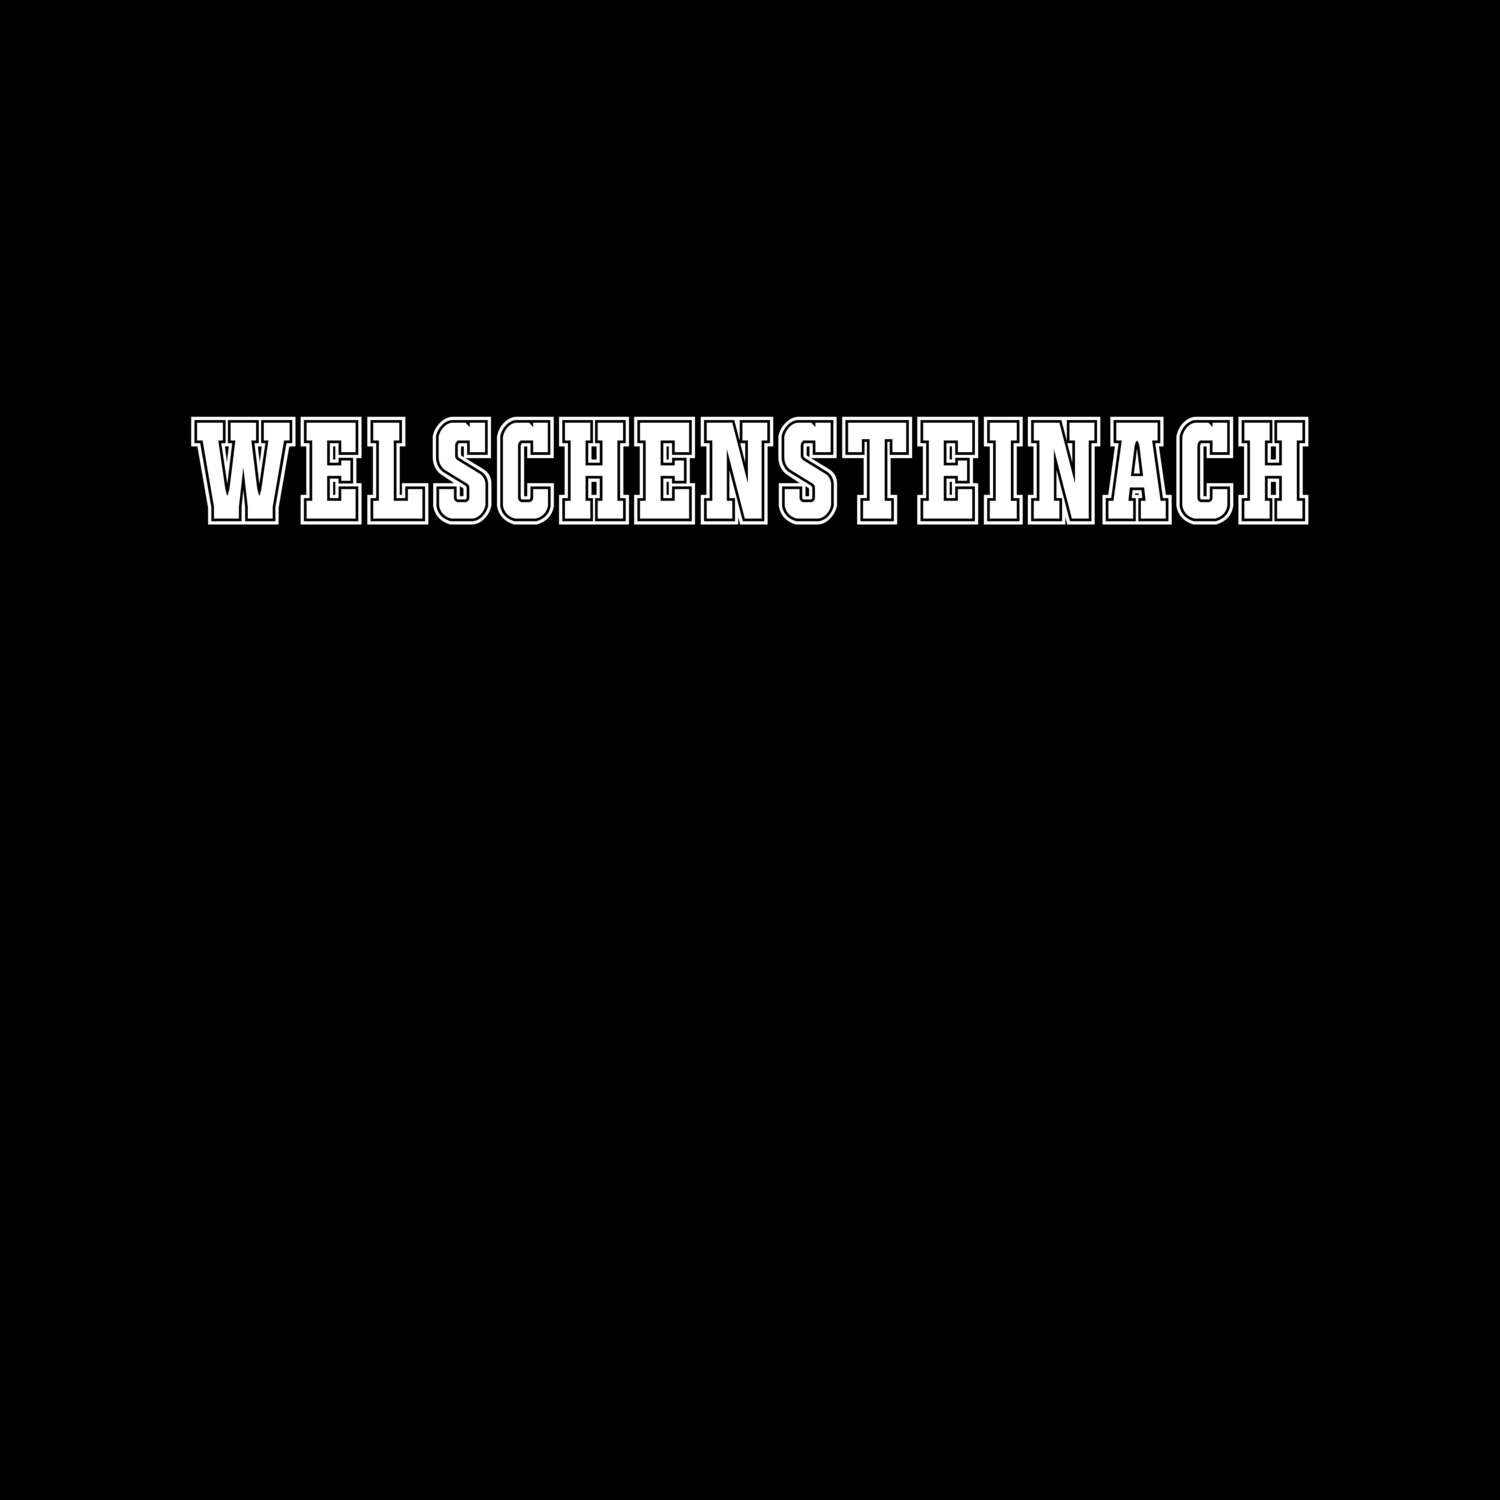 Welschensteinach T-Shirt »Classic«